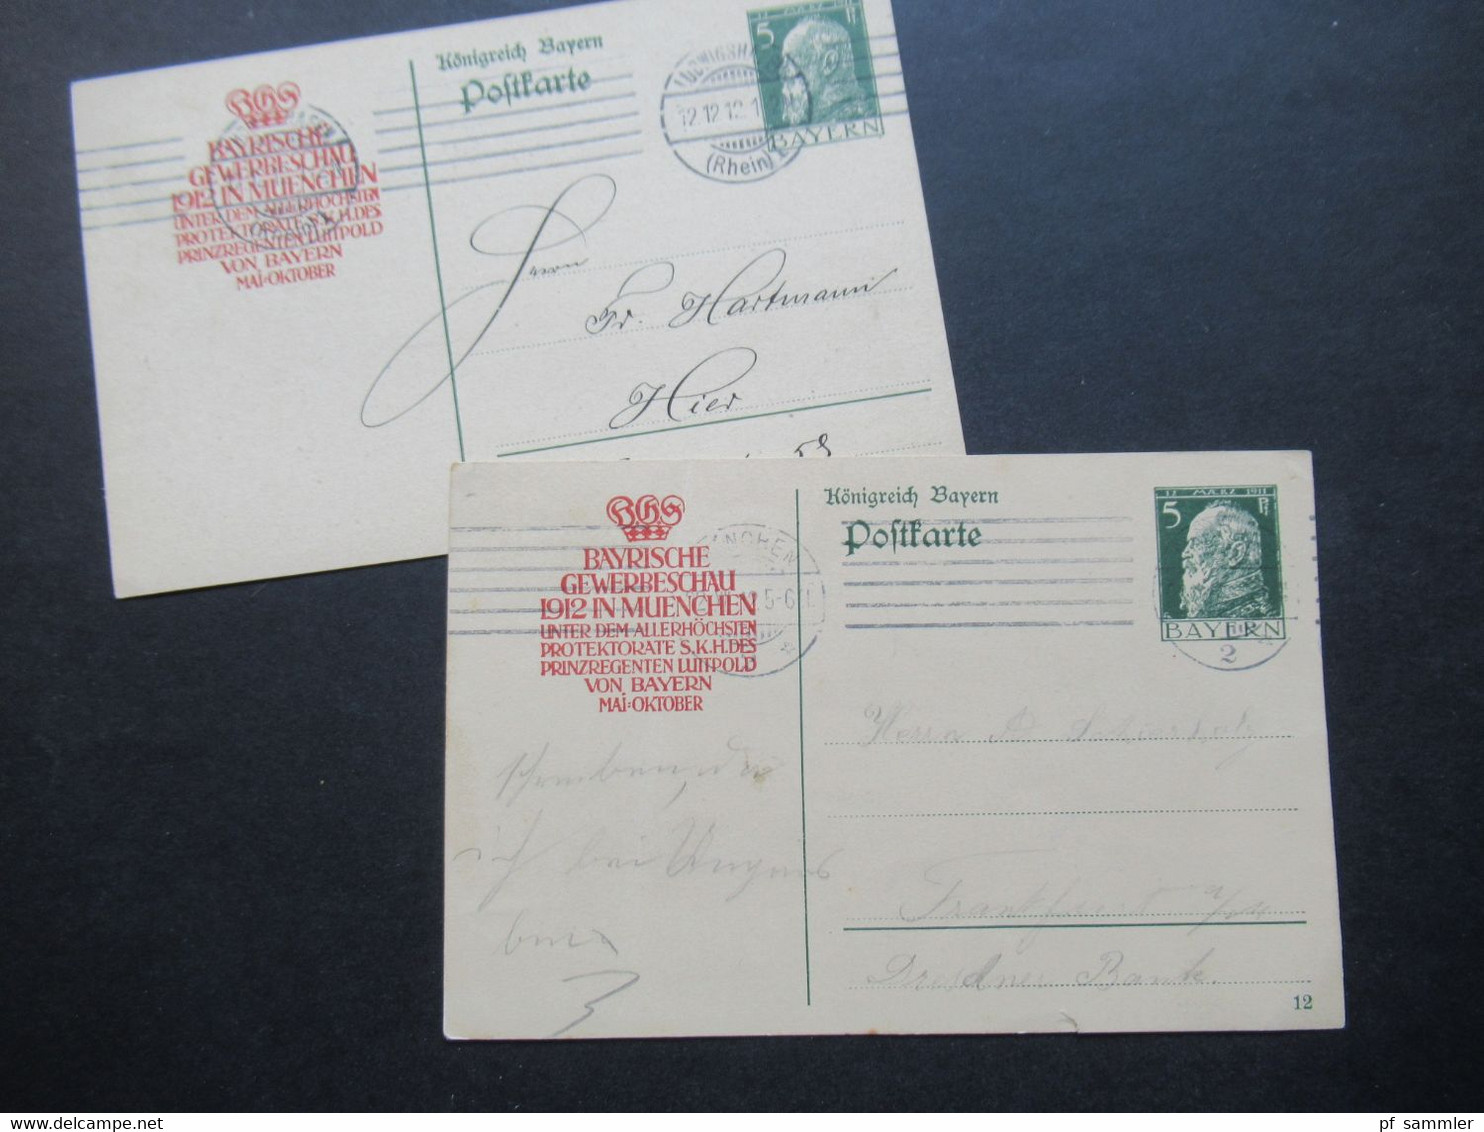 AD Bayern 1912 Postkarte / Ganzsache Mit Zudruck Bayrische Gewerbeschau 1912 In Muenchen Unter Protektorate Luitpold - Enteros Postales